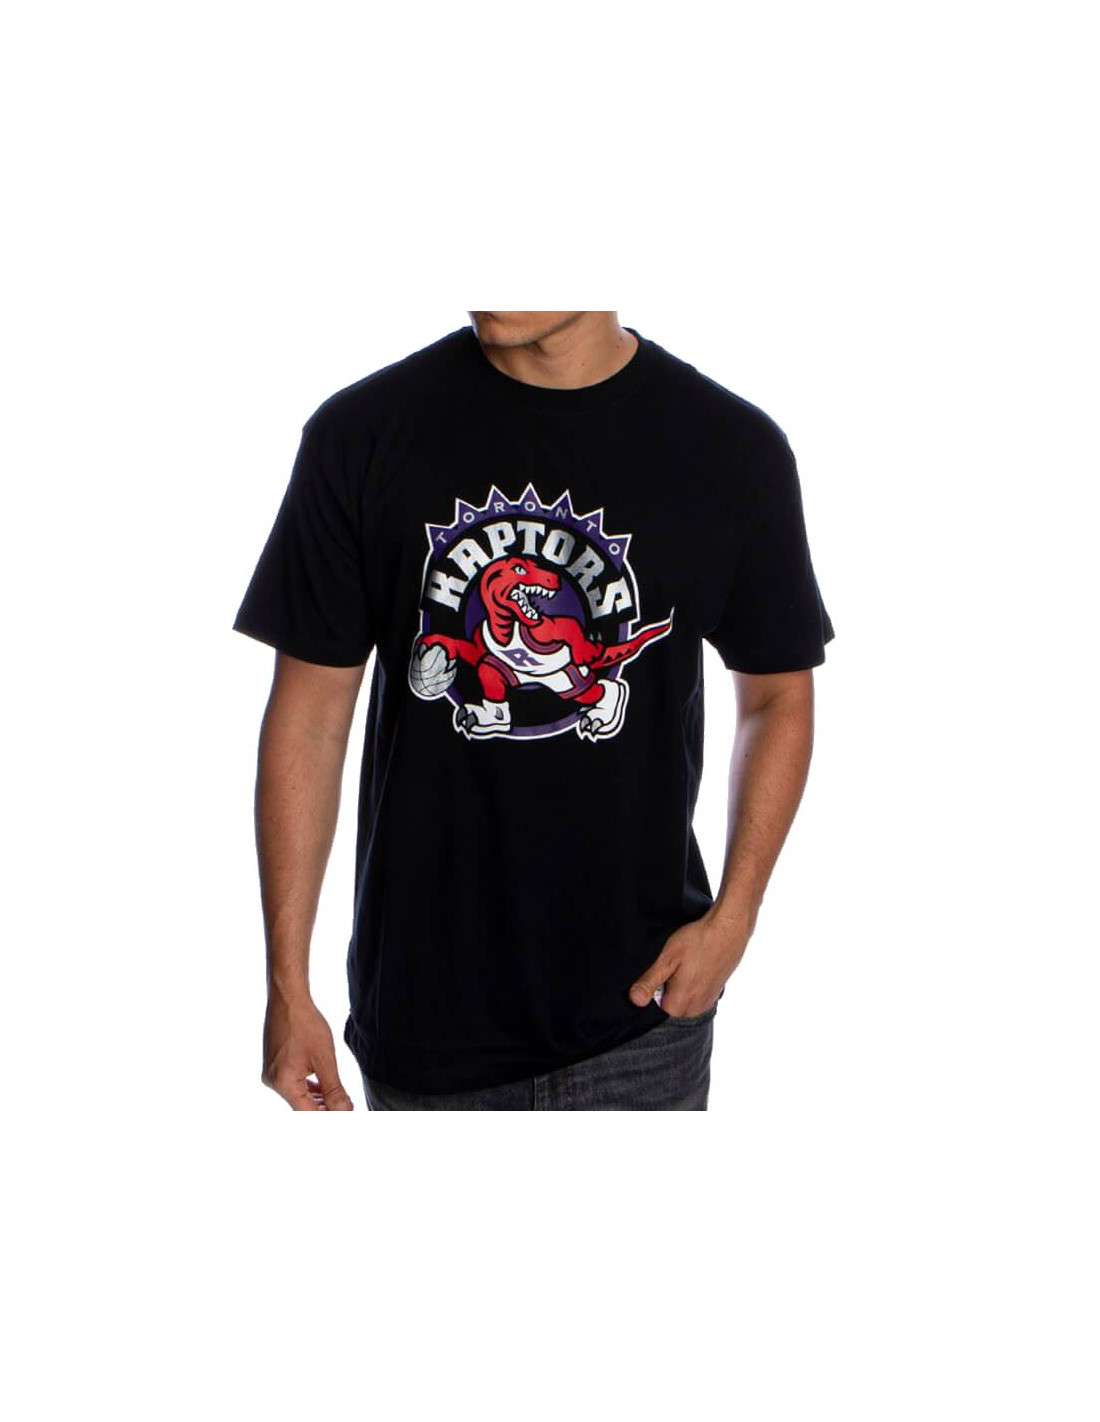 Camiseta mitchell & ness toronto raptors negro hombre